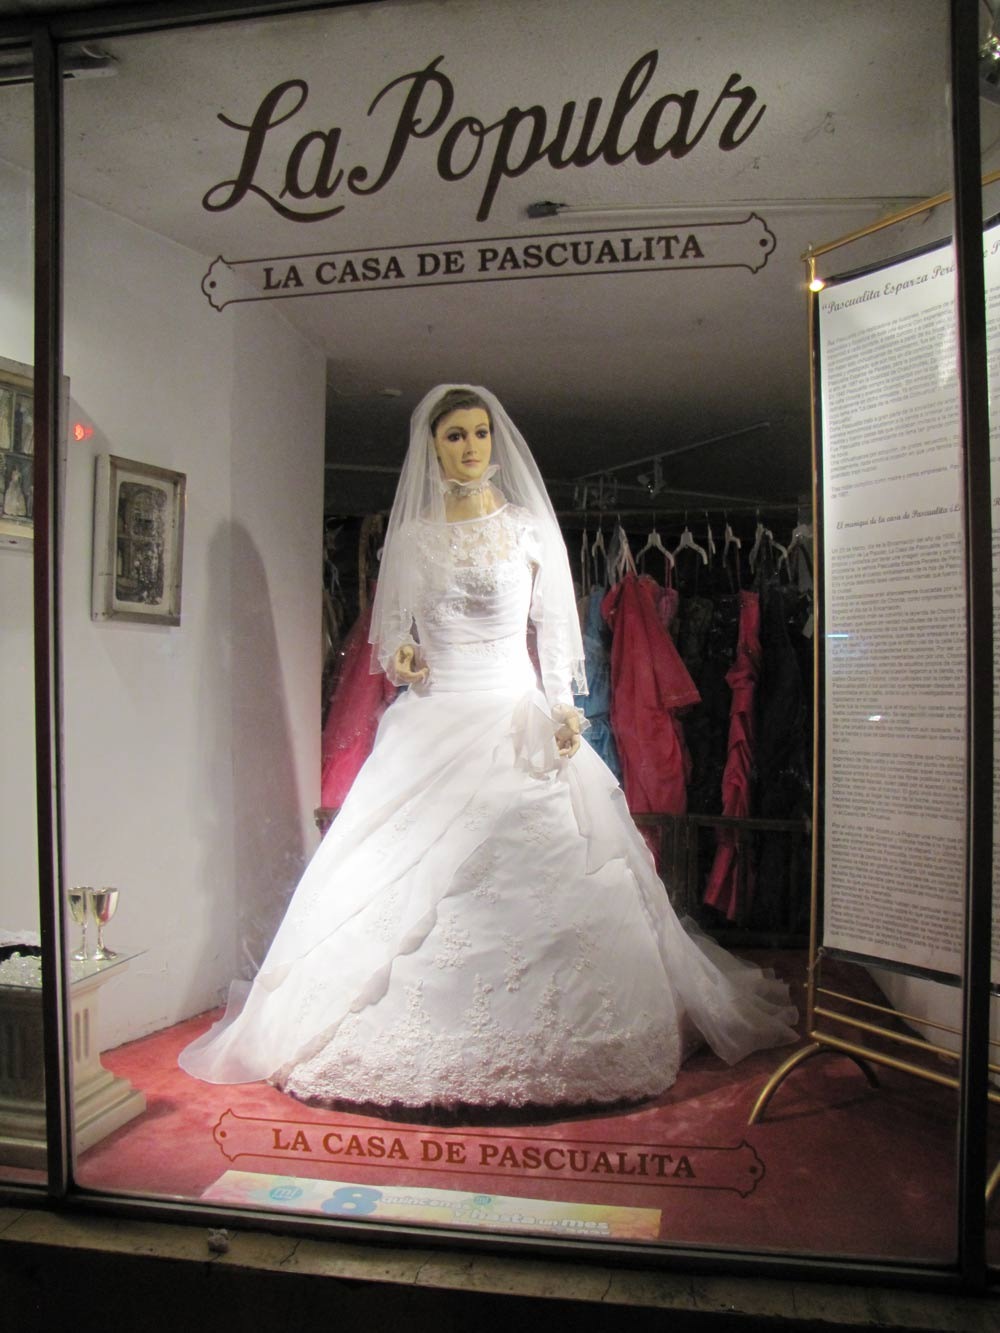 Паскуалита рекламирует одежду знаменитого свадебного салона с 1930 года